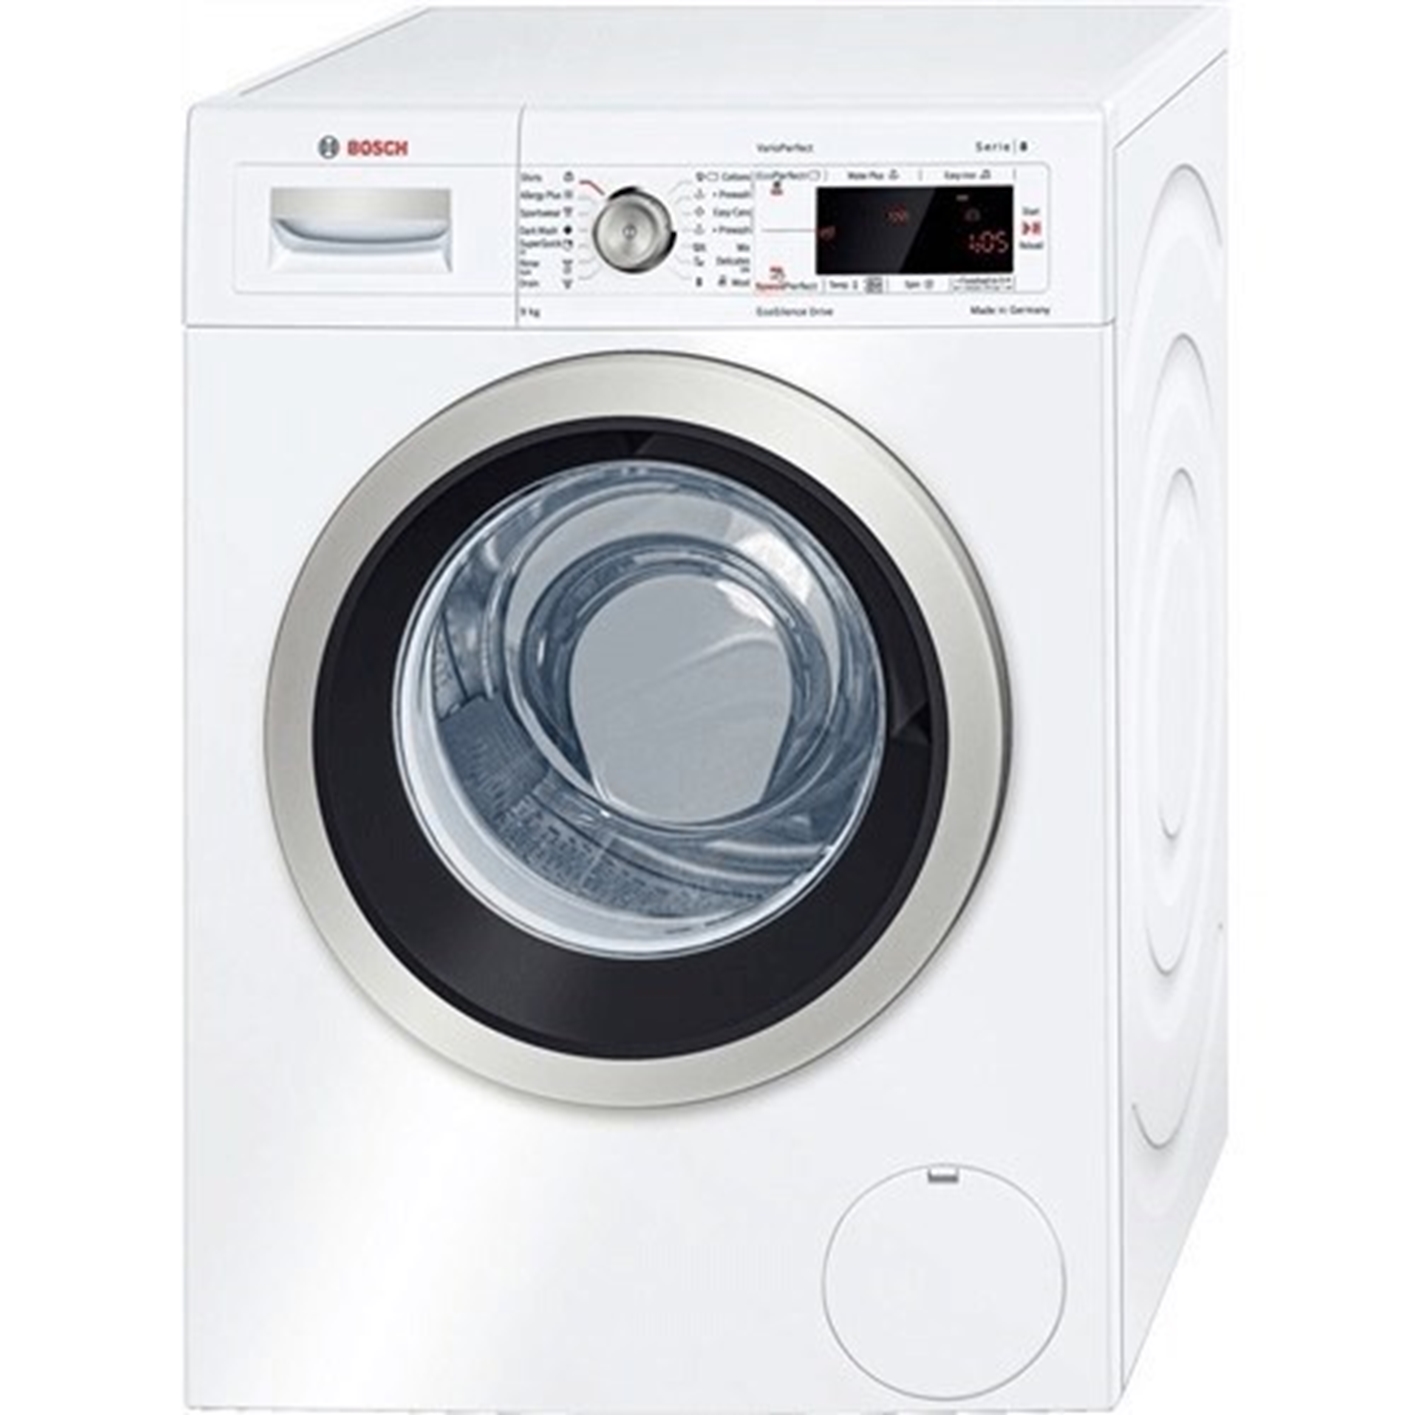 Hình ảnh của Máy giặt Bosch WAW24460EU